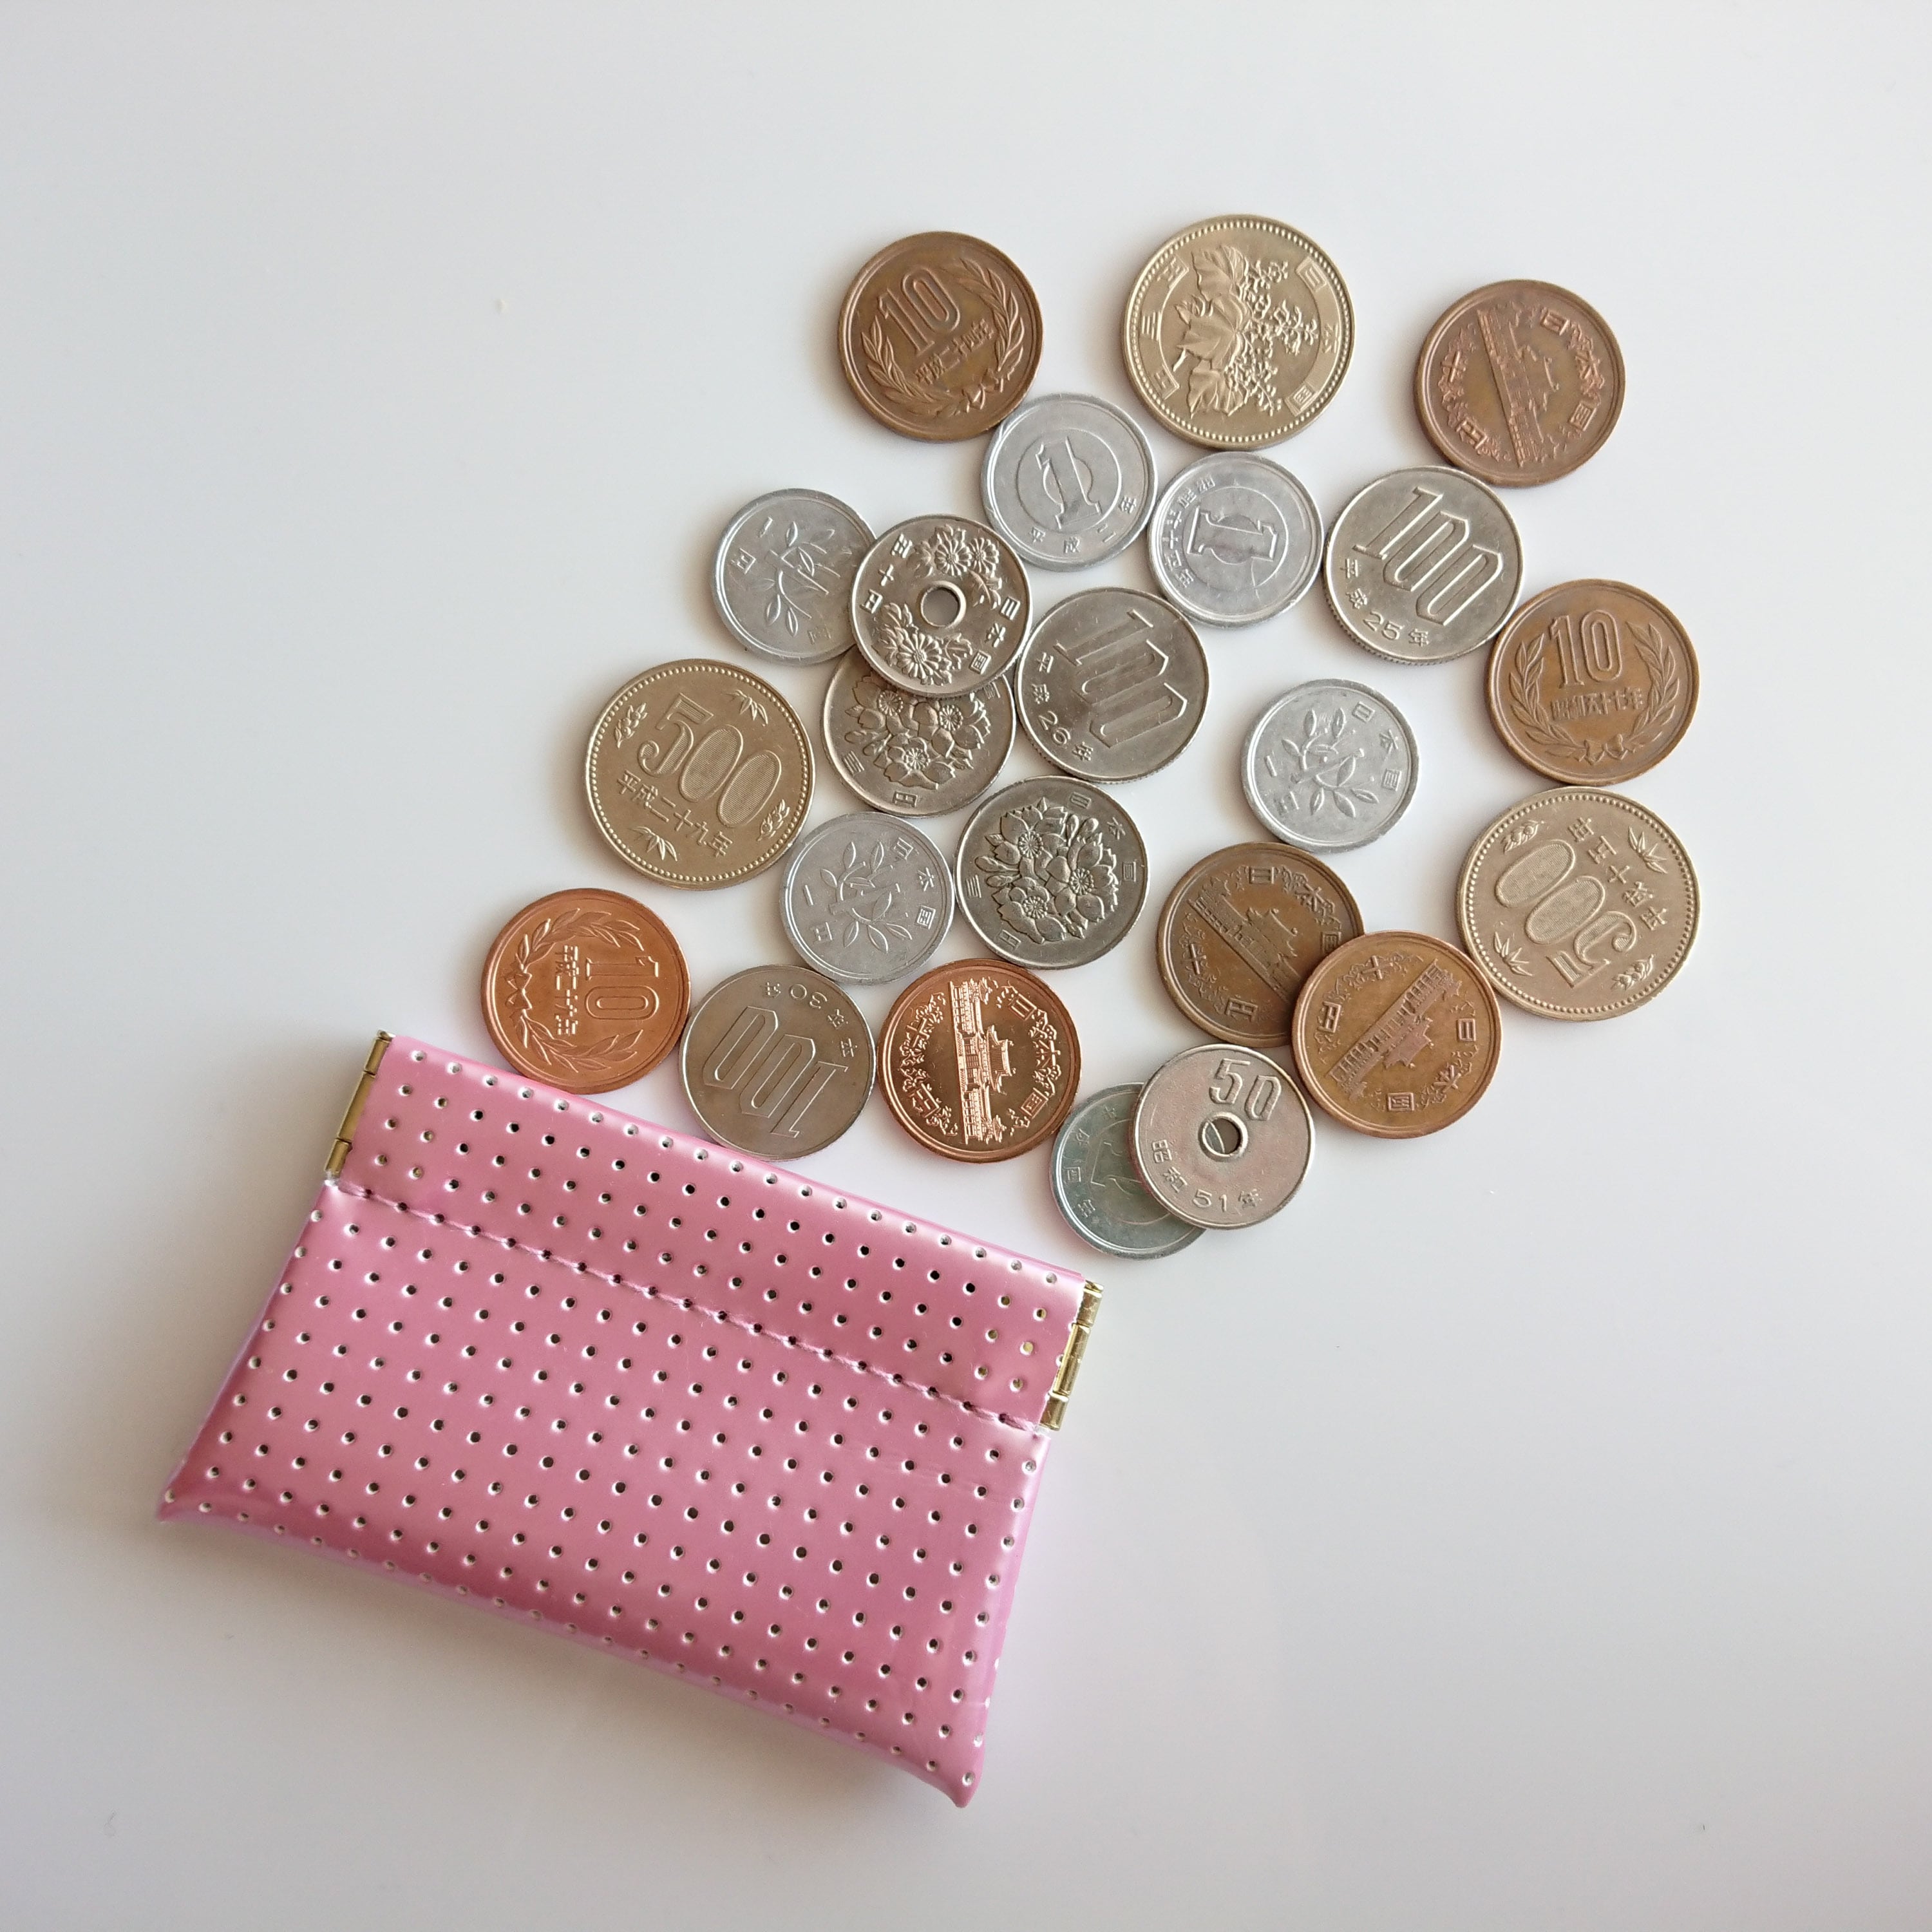 OSORO コインケースmini ☆ もも 小銭に指が届く 小さいけどたっぷりのコインを収納